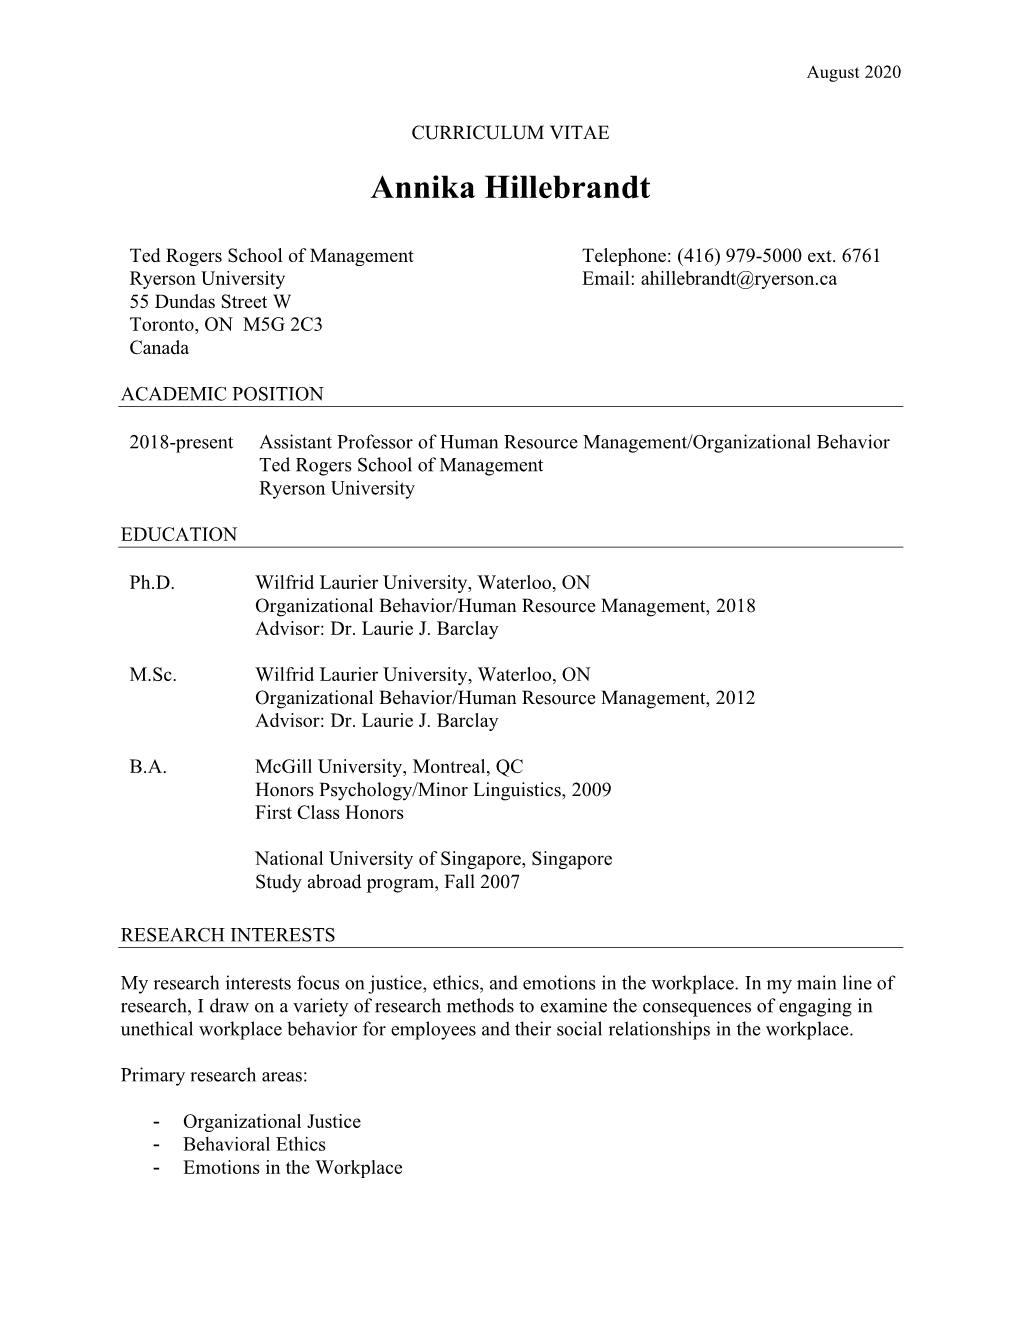 Annika Hillebrandt CV